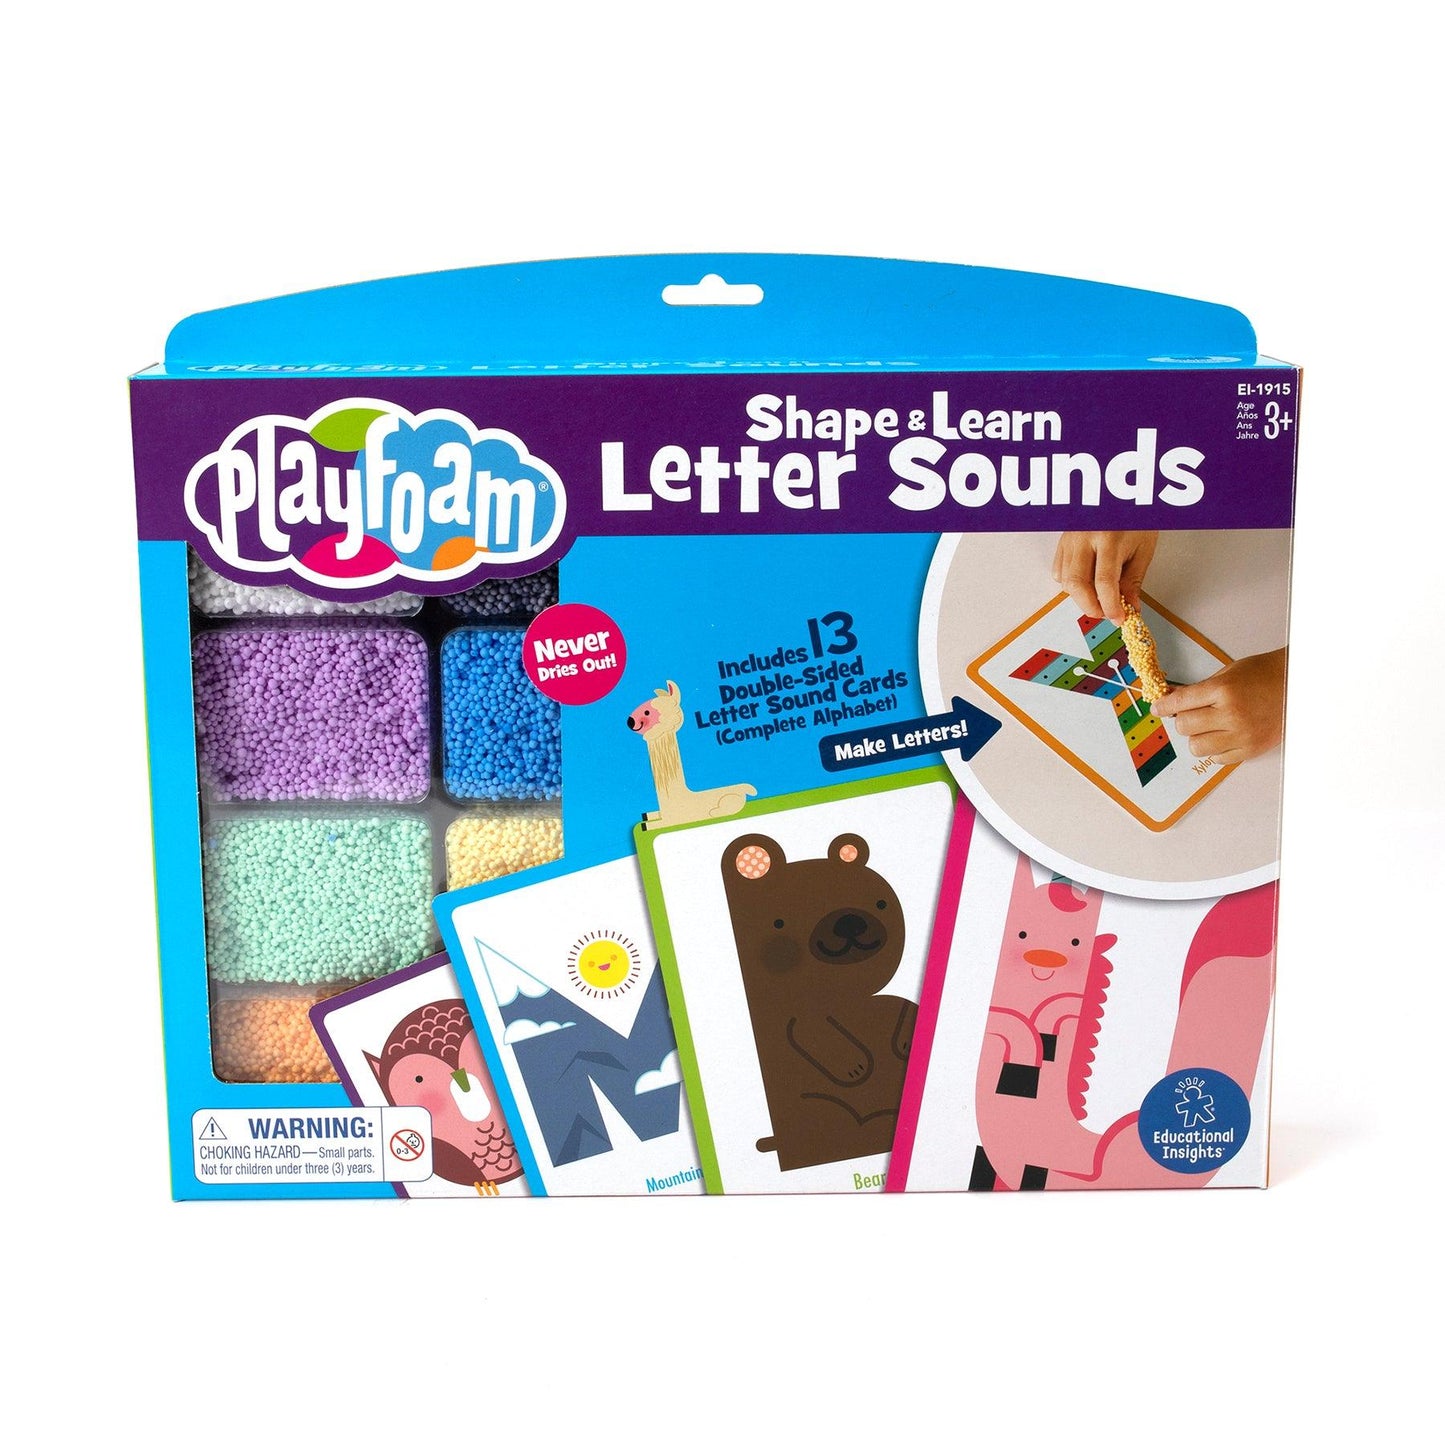 Playfoam® Shape & Learn Letter Sounds - Loomini